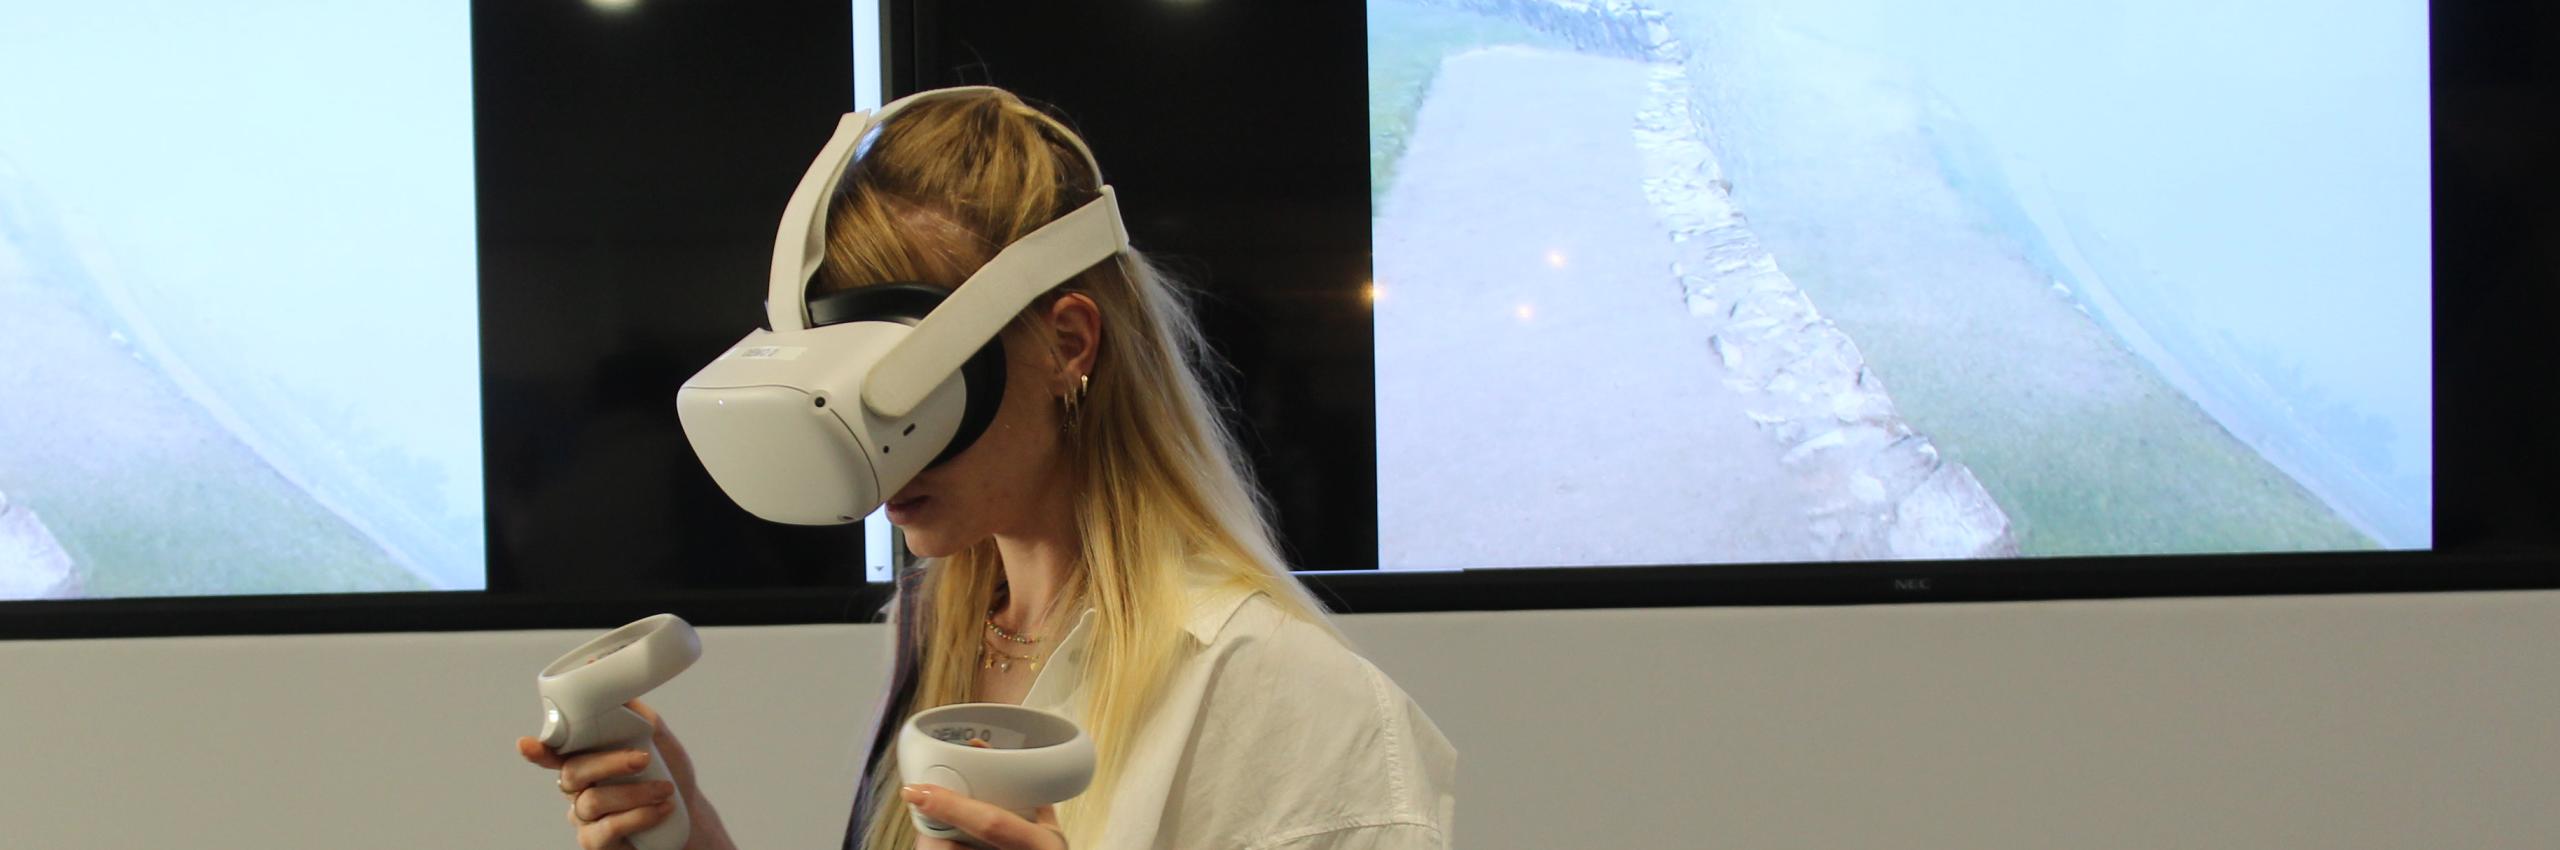 La realtà virtuale per la salute mentale